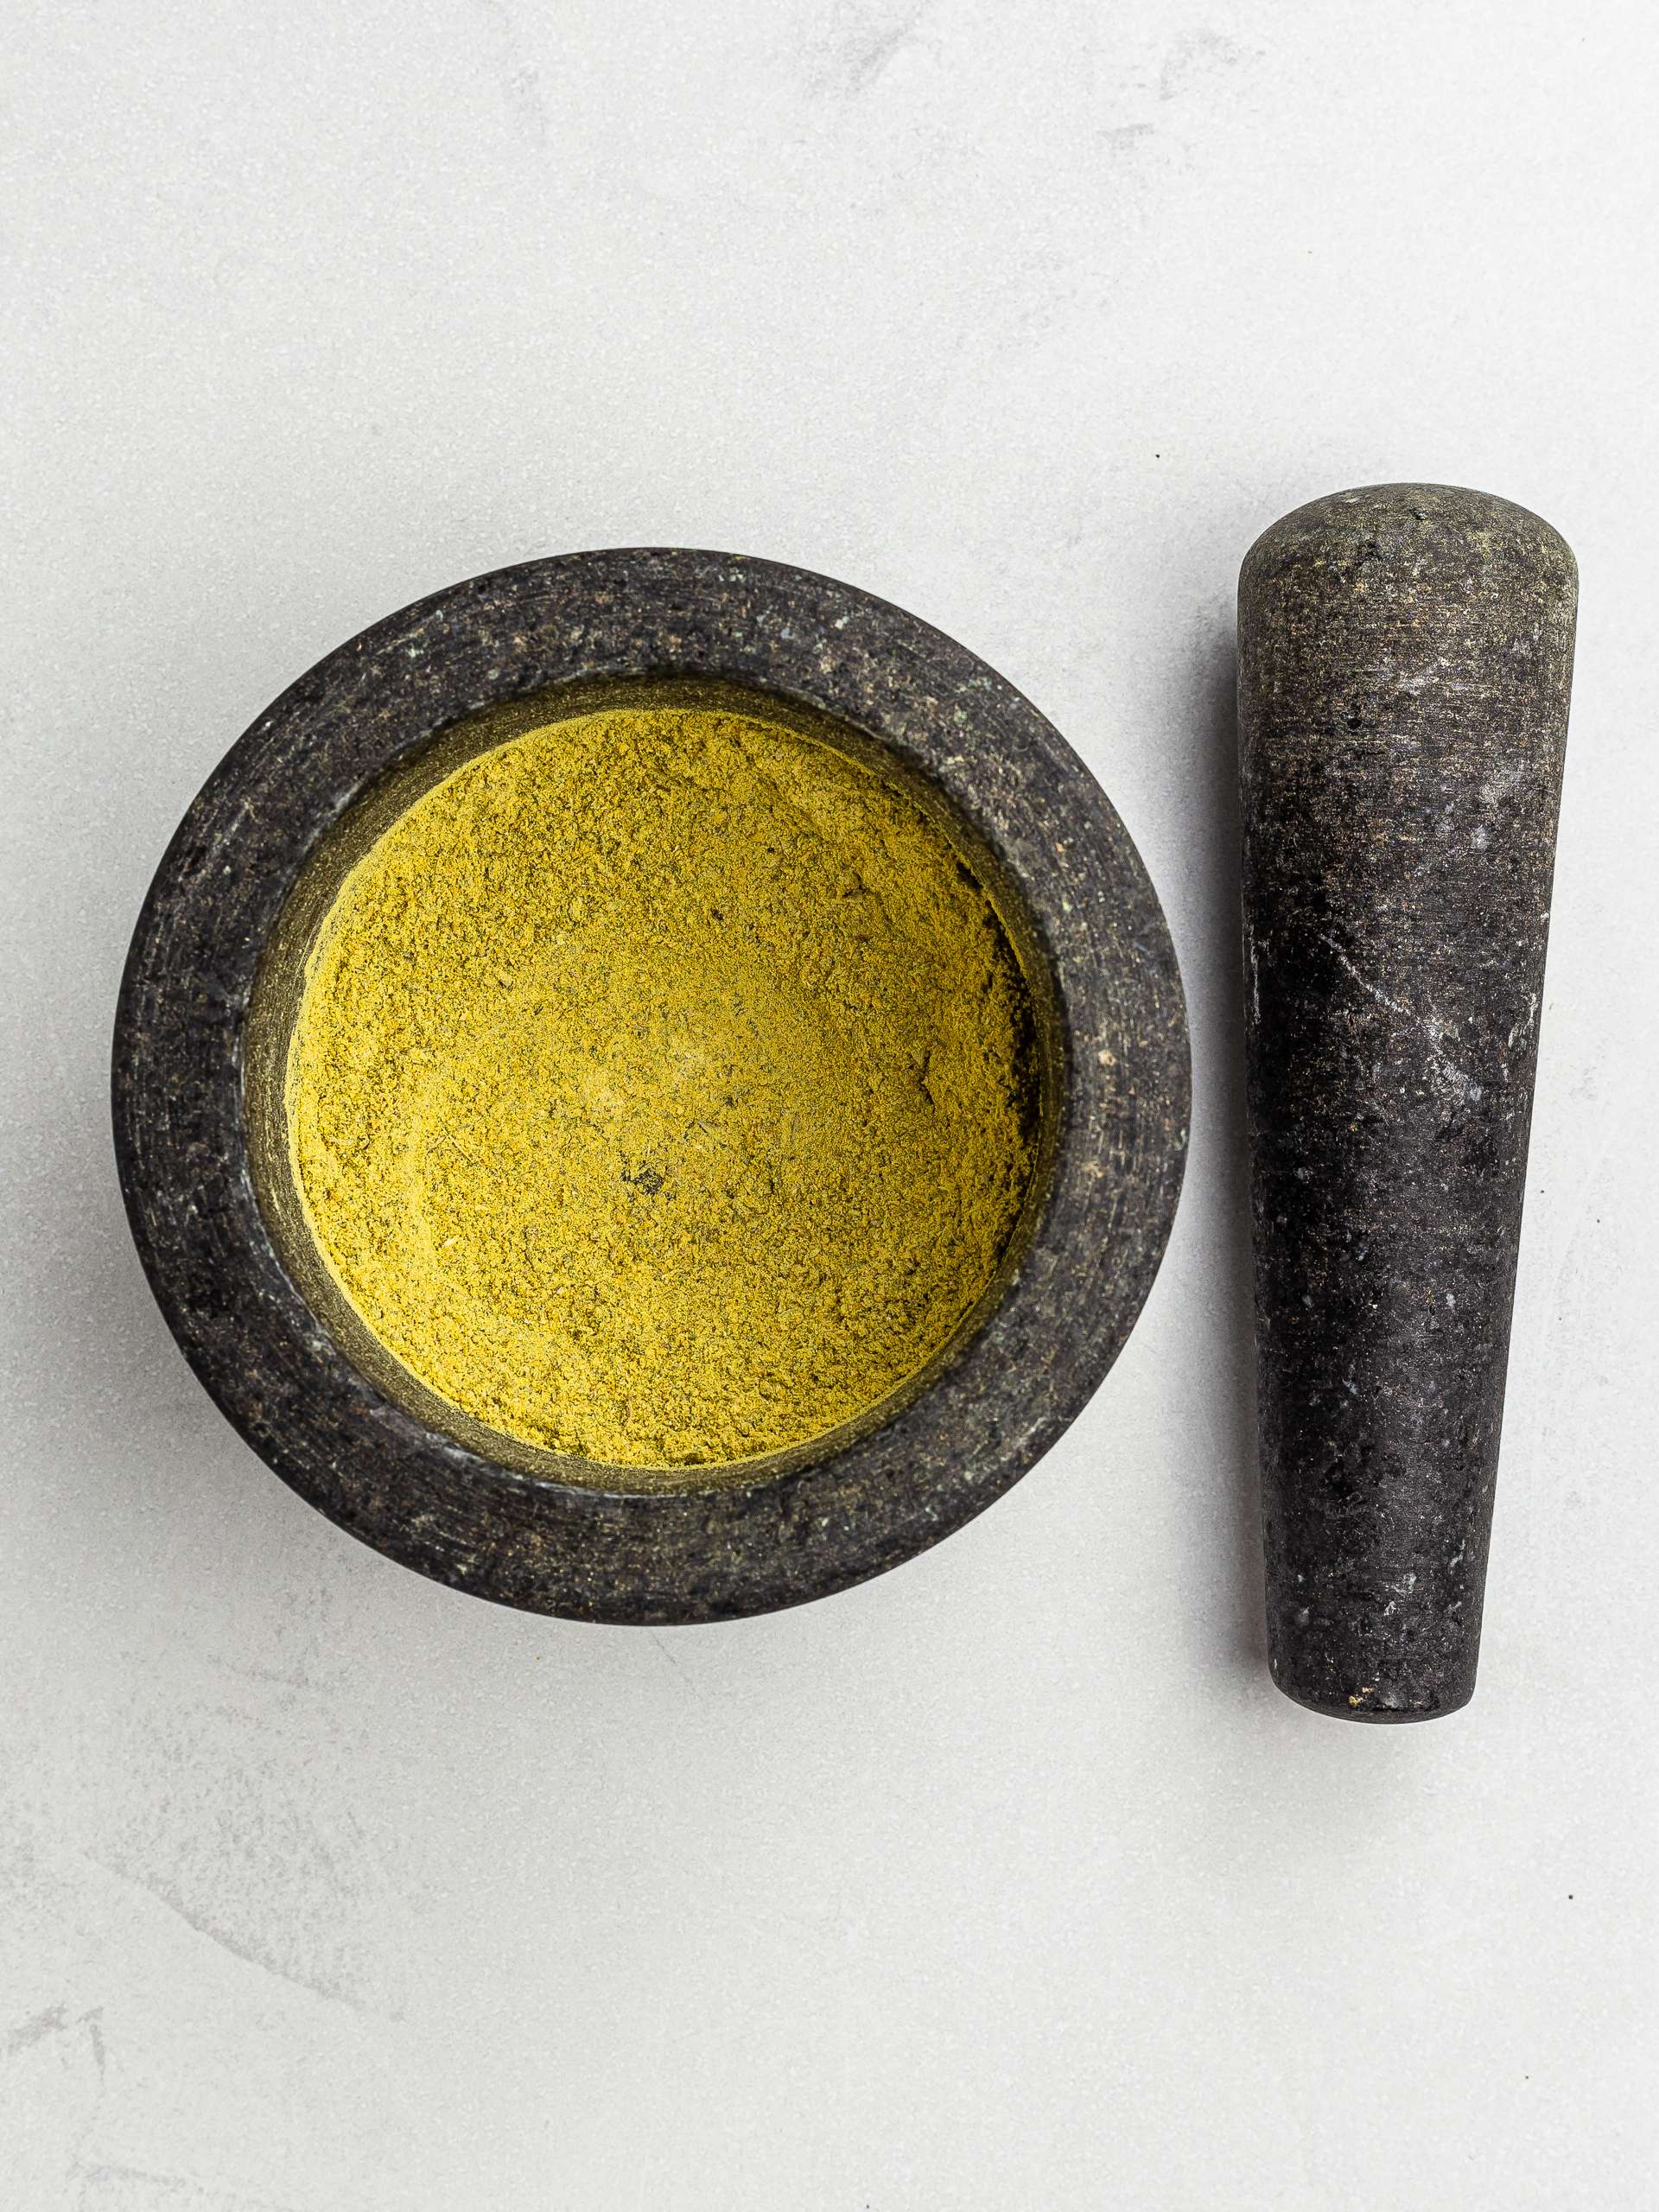 homemade bouillon powder in a mortar